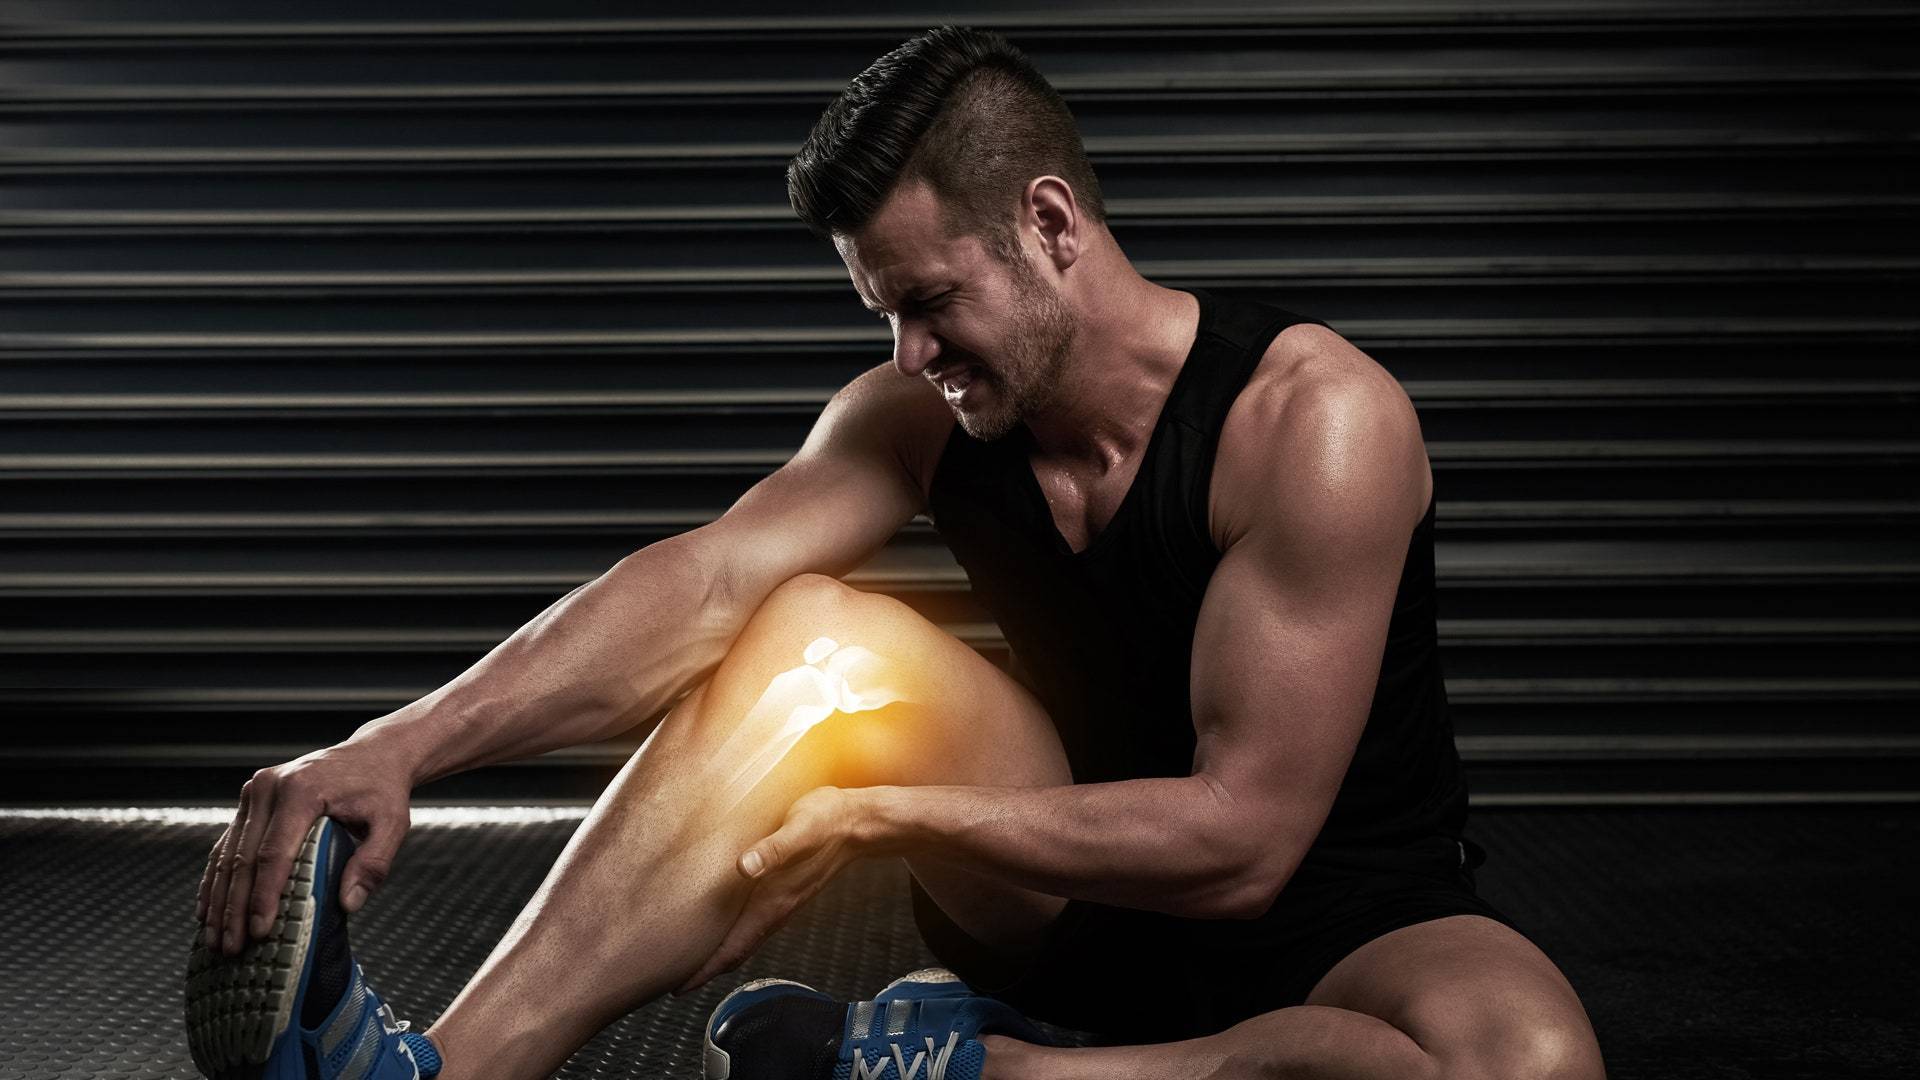 Боль в мышцах после тренировки. что делать, если болят мышцы?